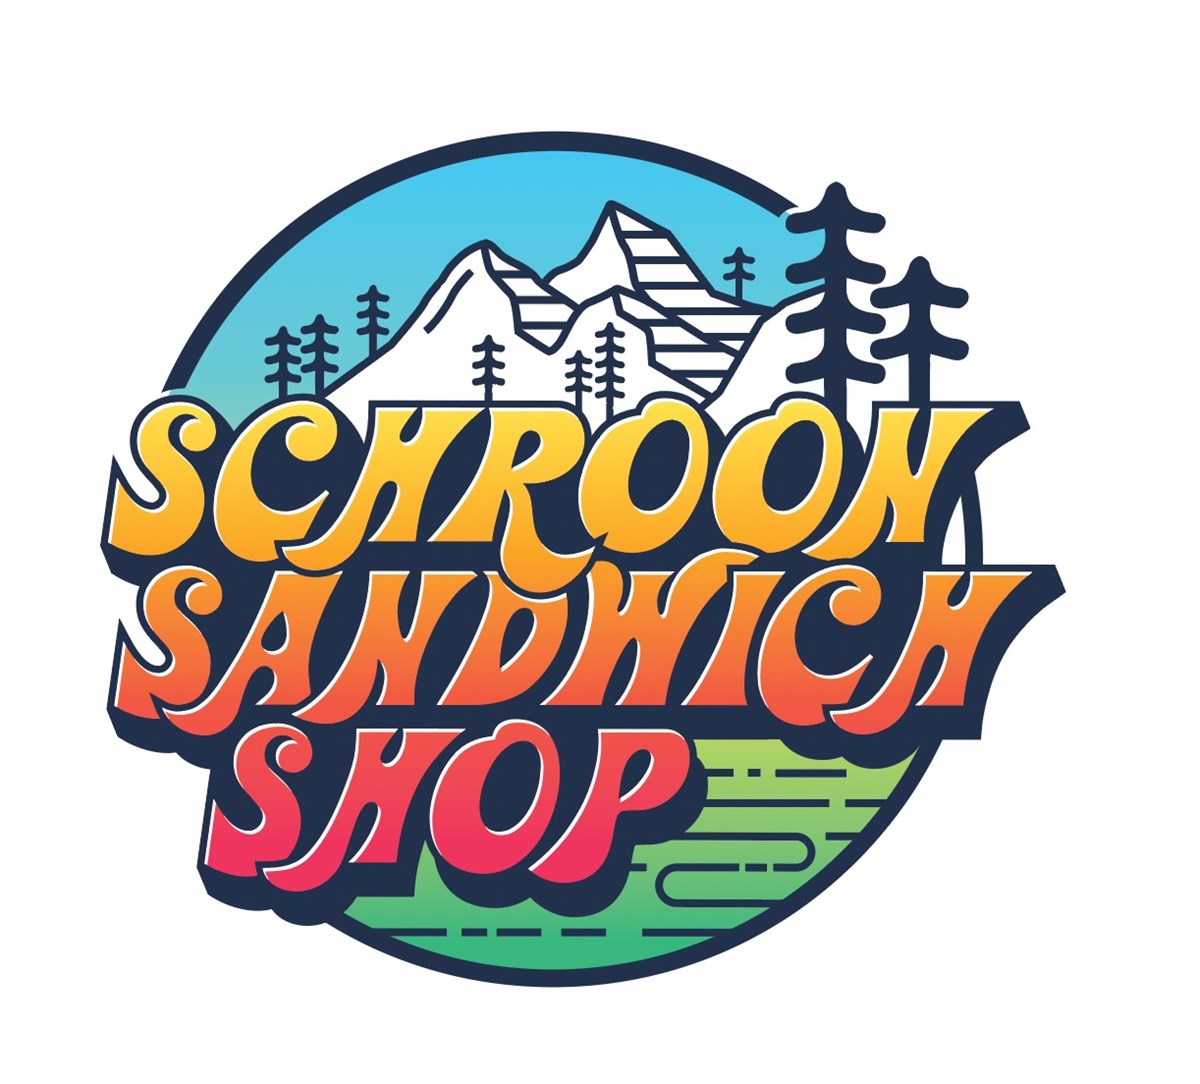 Schroon Sandwich Shop - Homepage